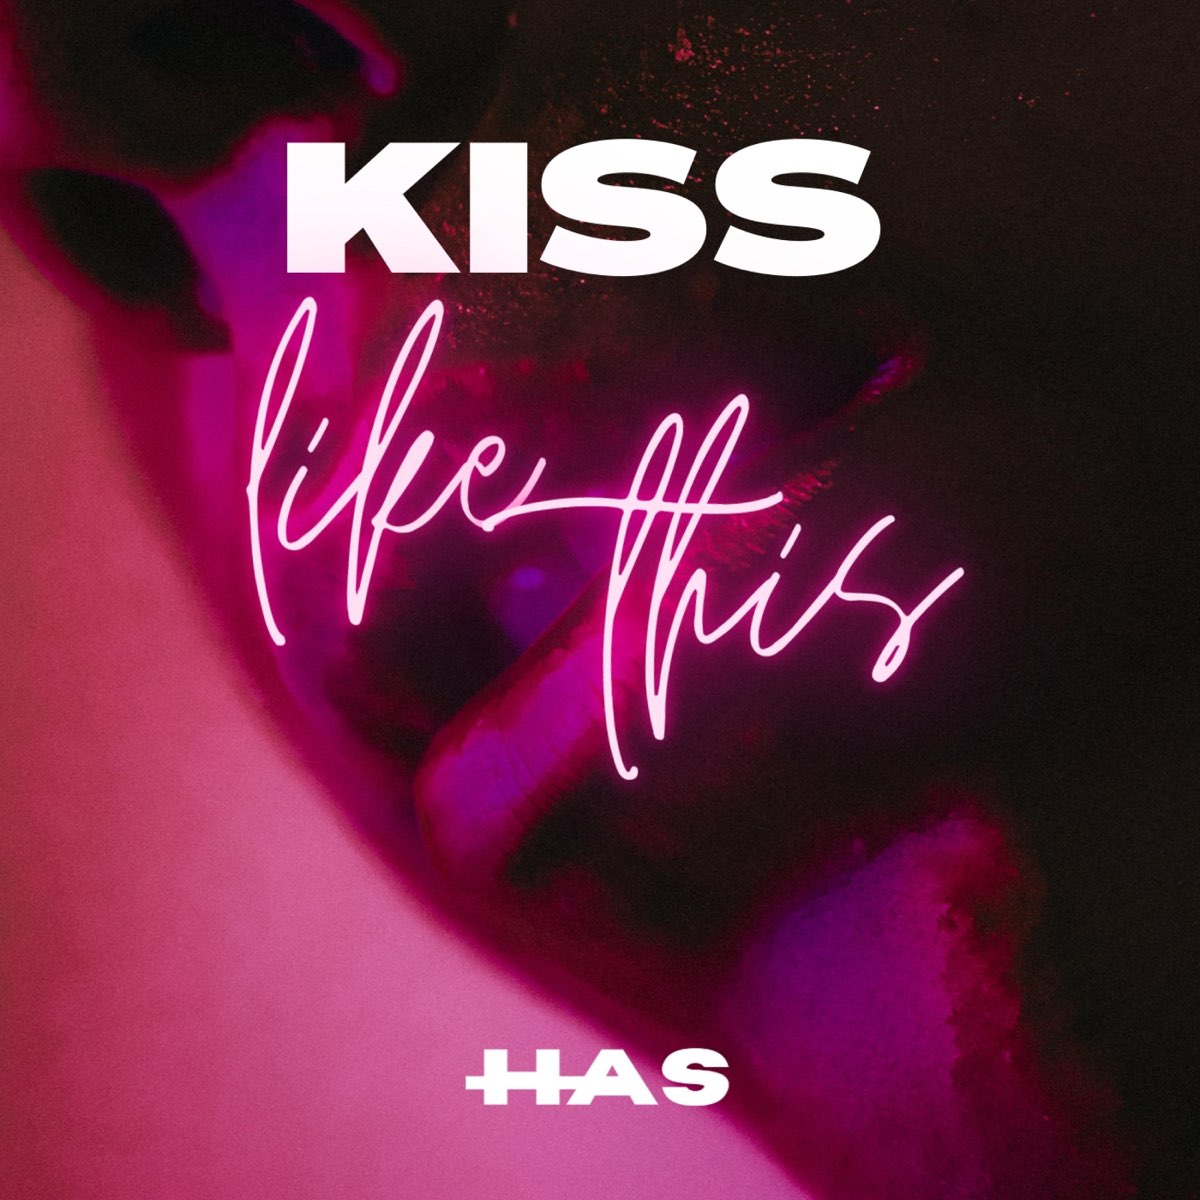 Kiss me like i do. Kiss like. Tury - Kisses альбом.